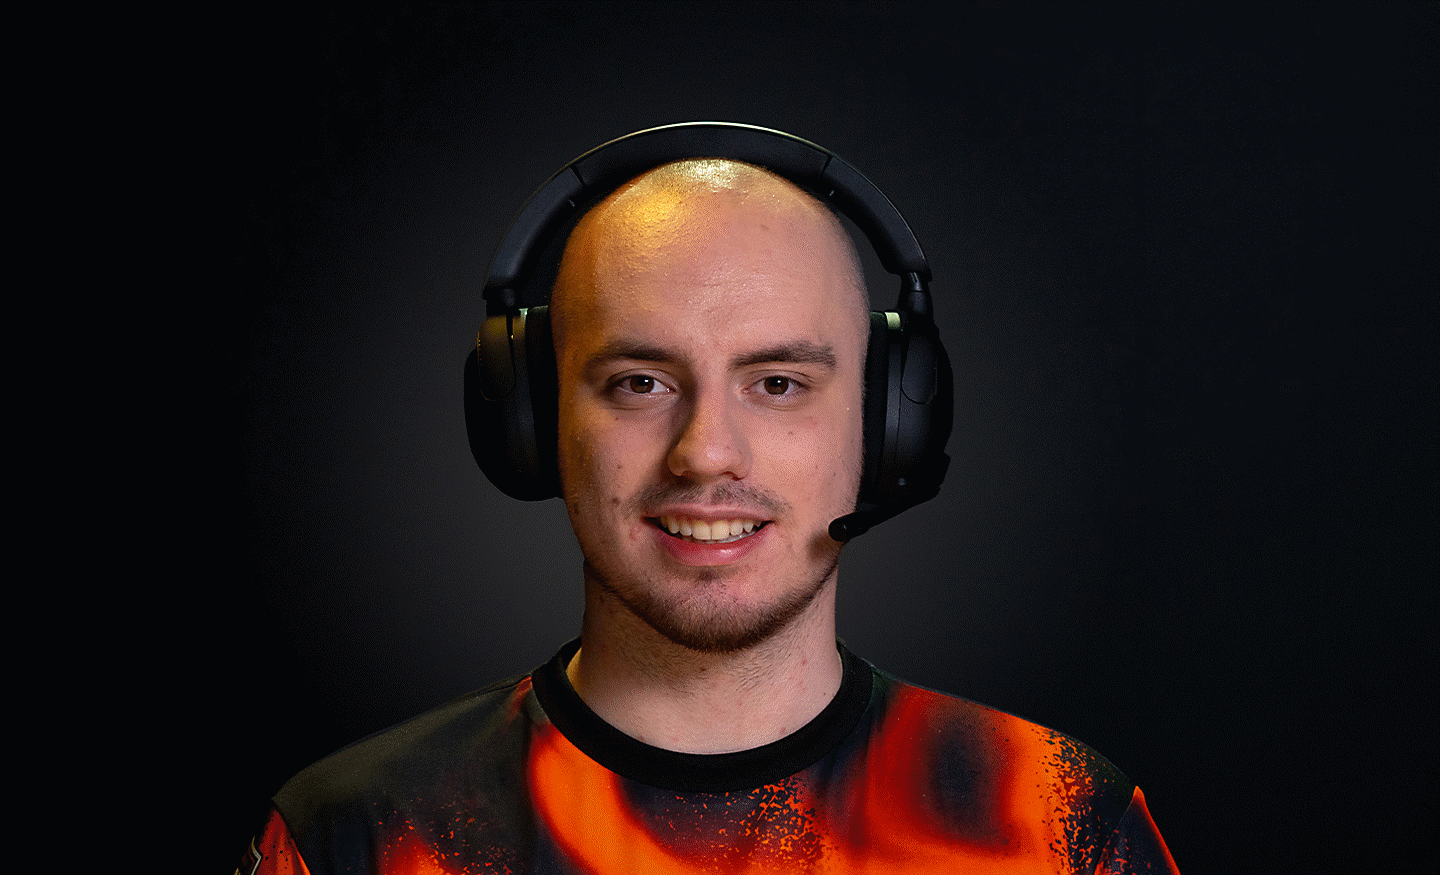 Profile image of Derke wearing a pair of black INZONE H5 headphones 